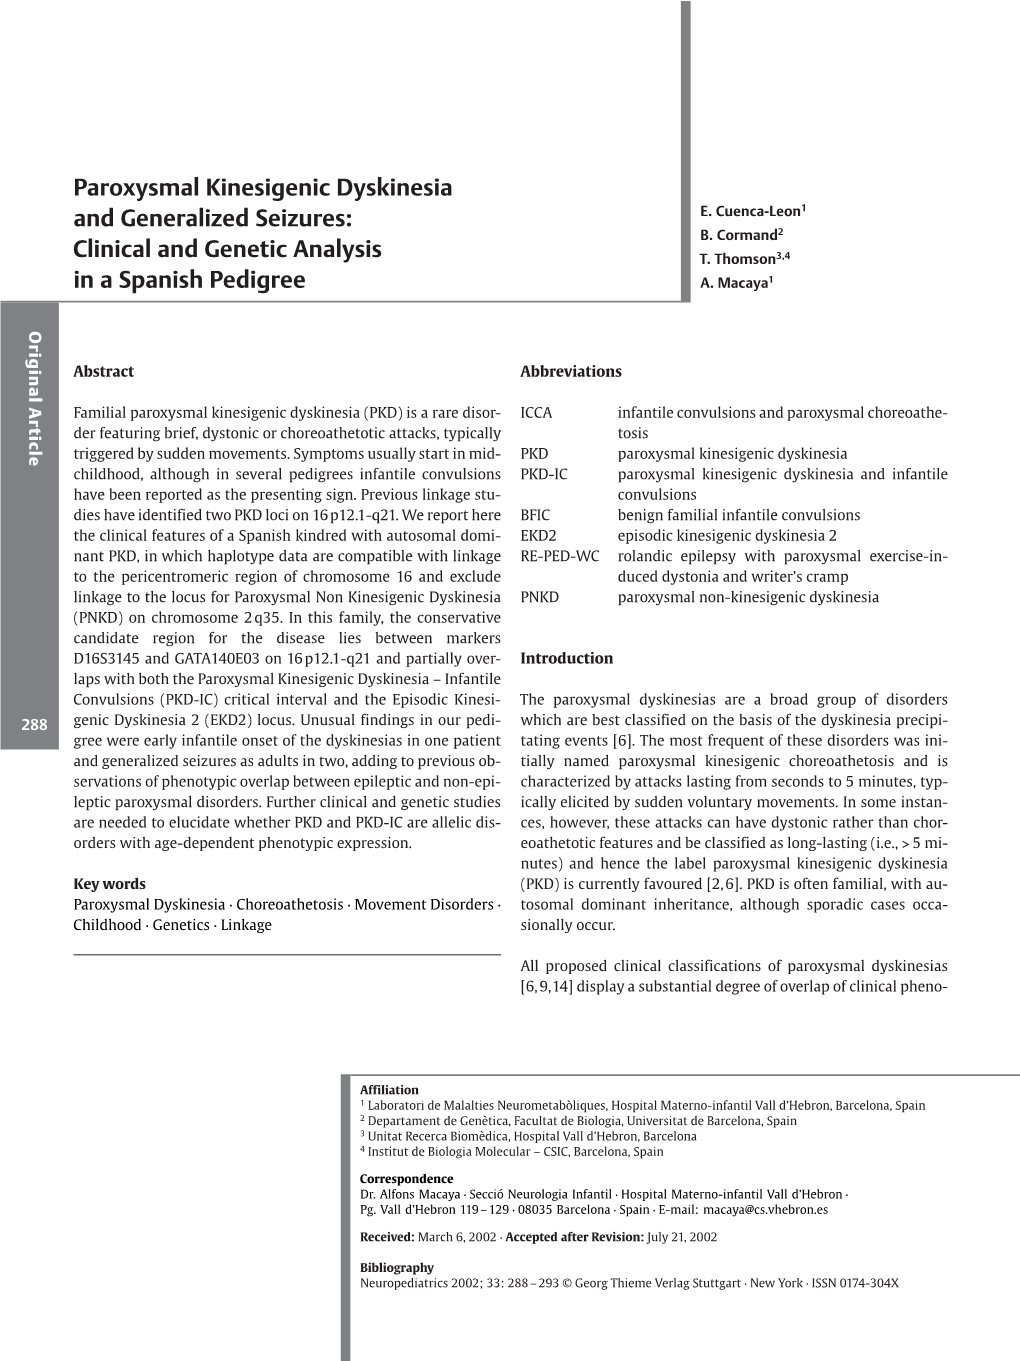 Paroxysmal Kinesigenic Dyskinesia and Generalized Seizures: E